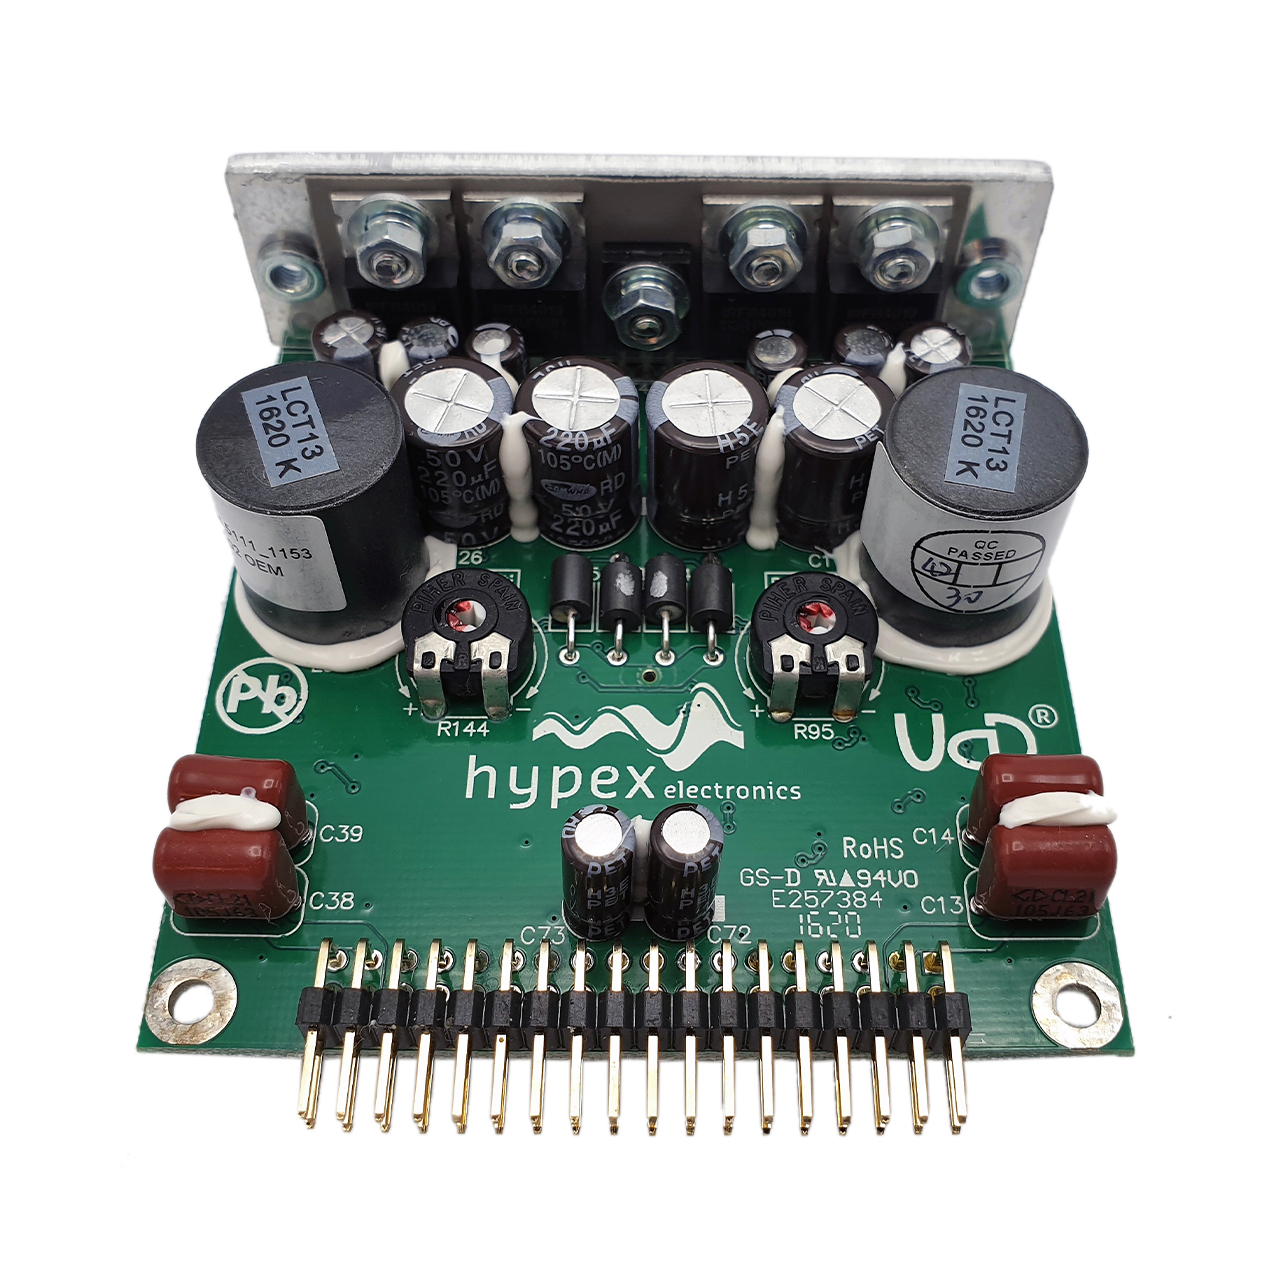 Hypex UcD™ 102 OEM amplifier module